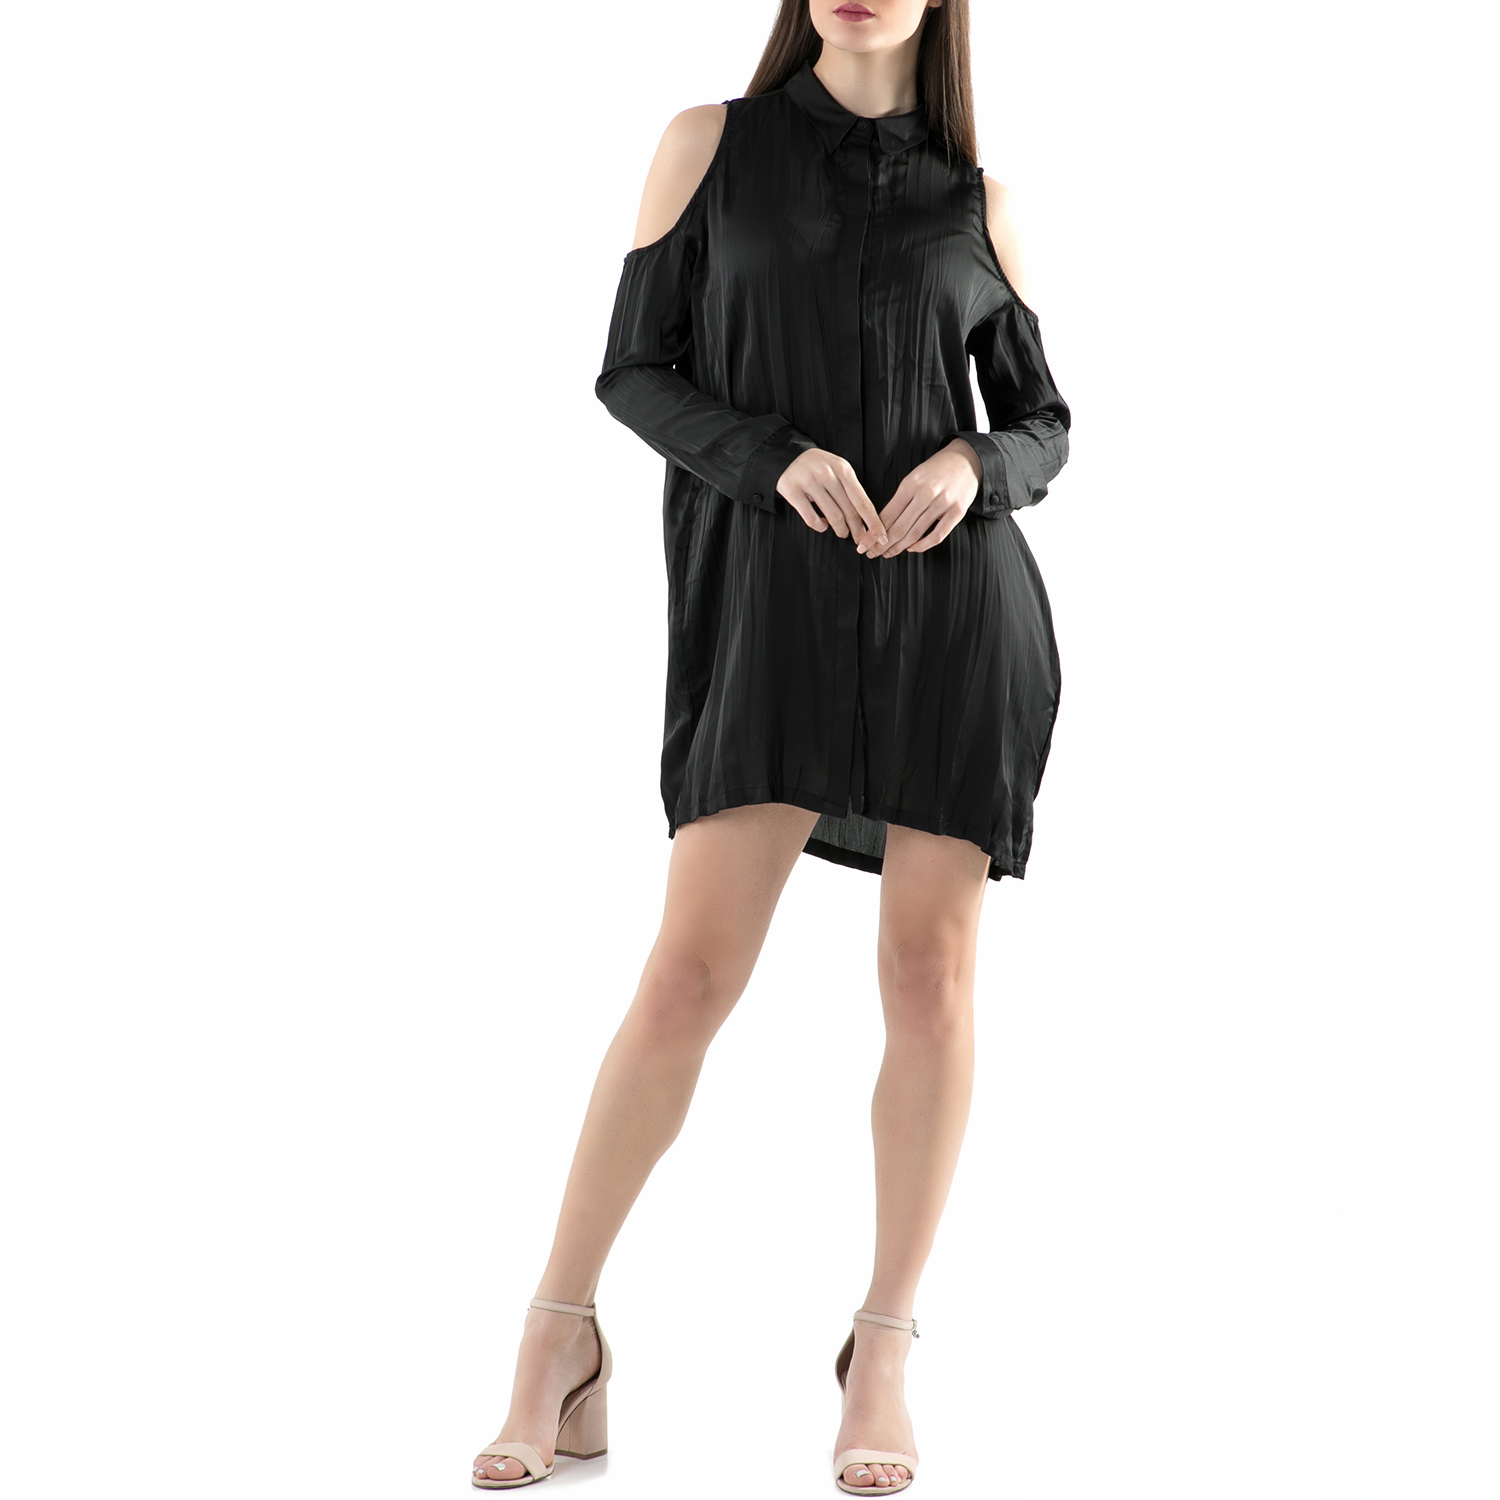 Γυναικεία/Ρούχα/Φορέματα/Μίνι FUNKY BUDDHA - Μίνι φόρεμα FUNKY BUDDHA μαύρο